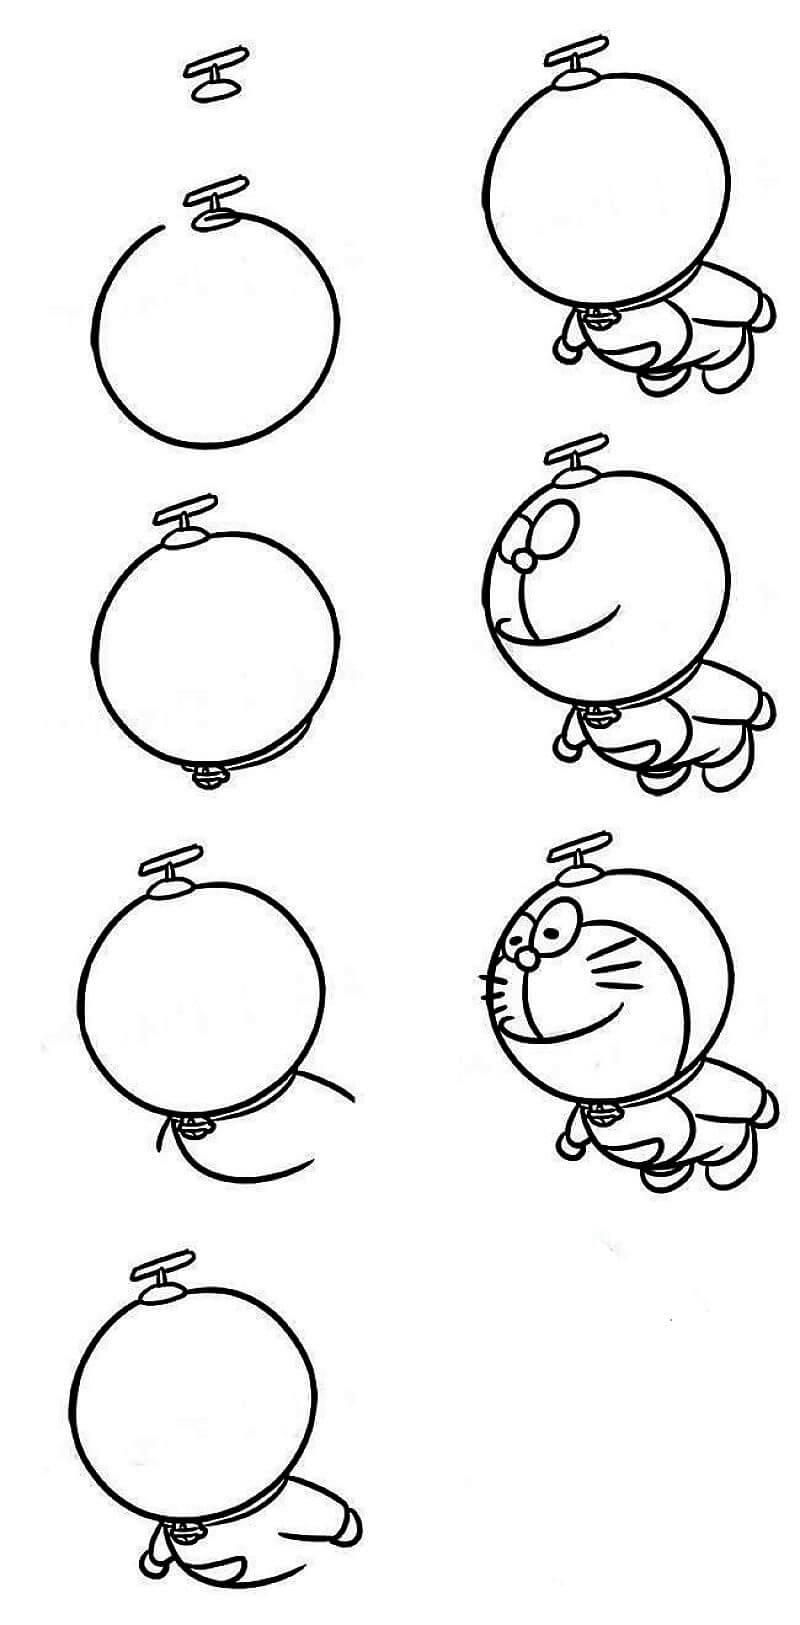 Doraemon is flying pисунки